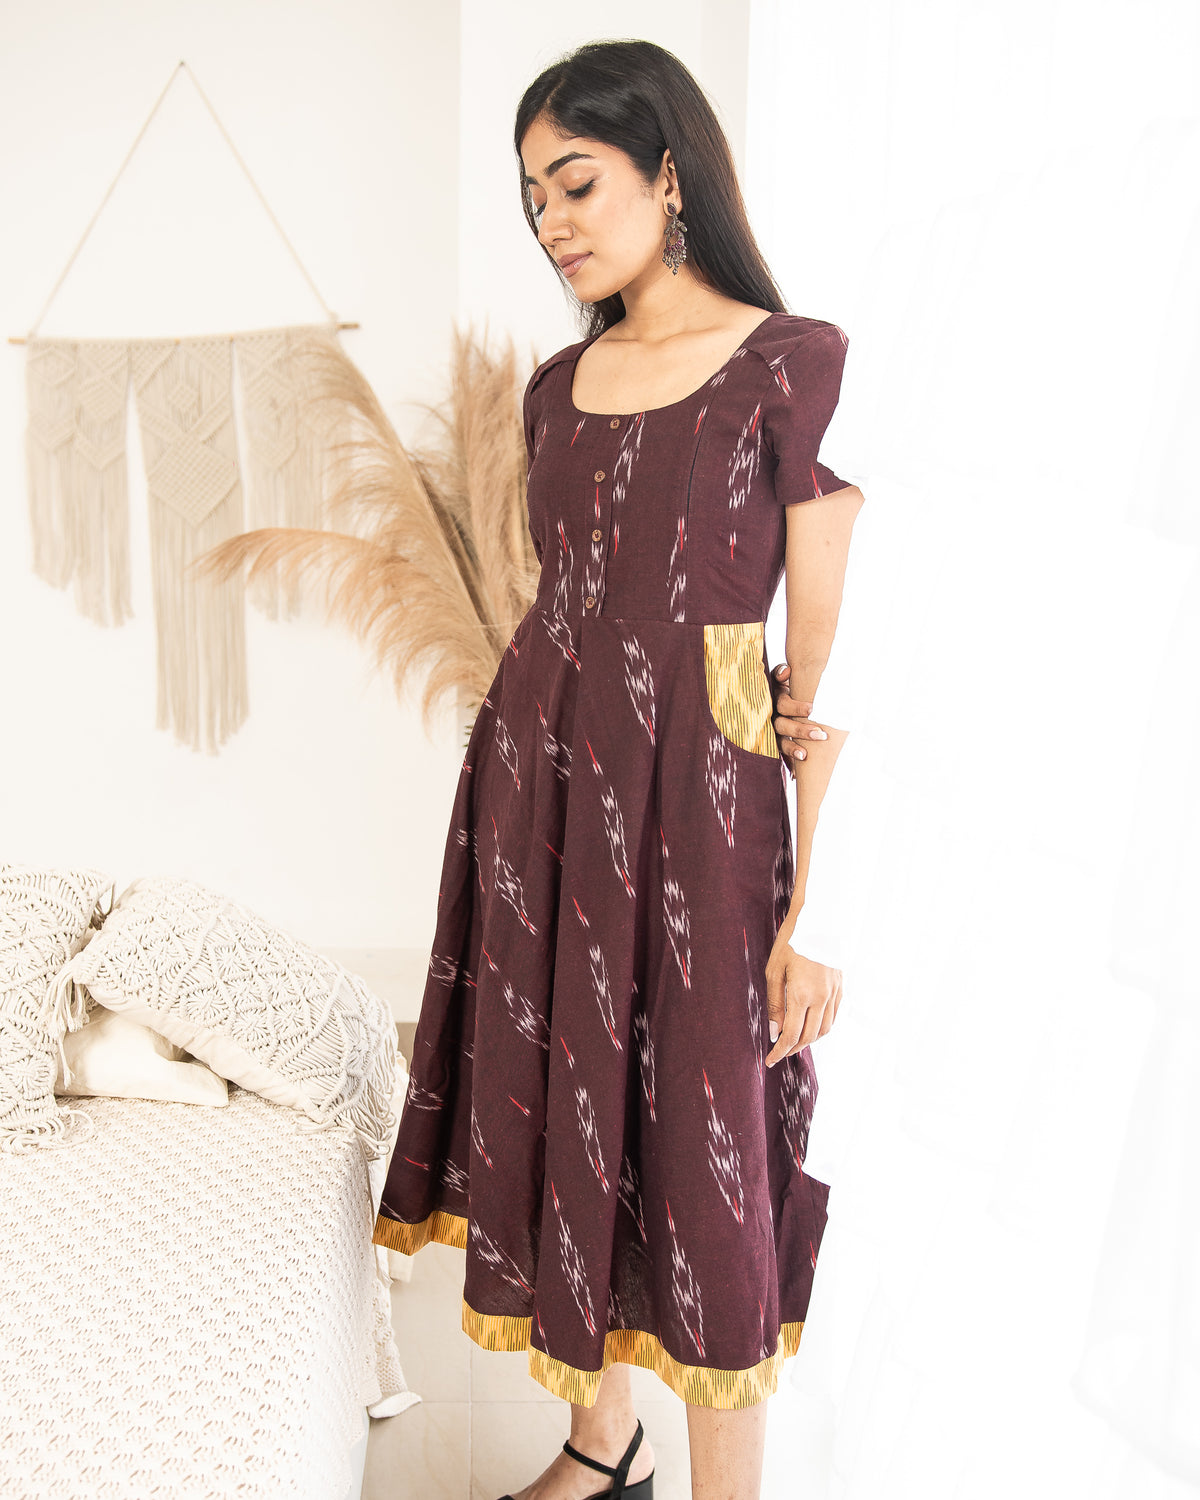 Bhairavi – Brown & Yellow Ikat Dress